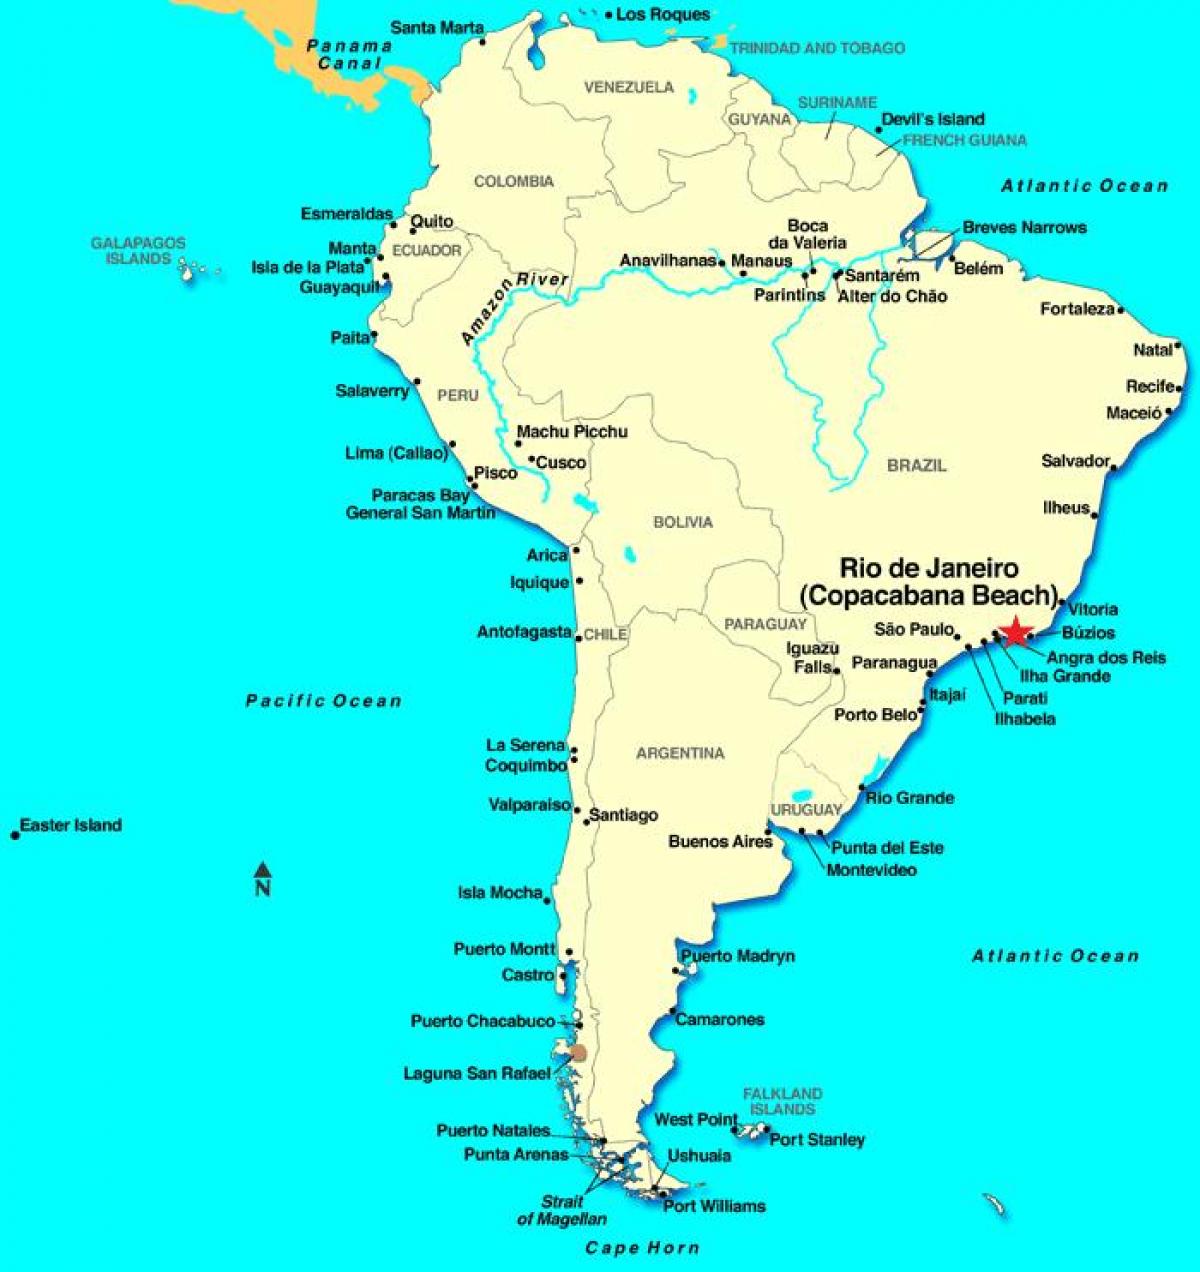 Карта на Рио де Жанеиро во Јужна Америка